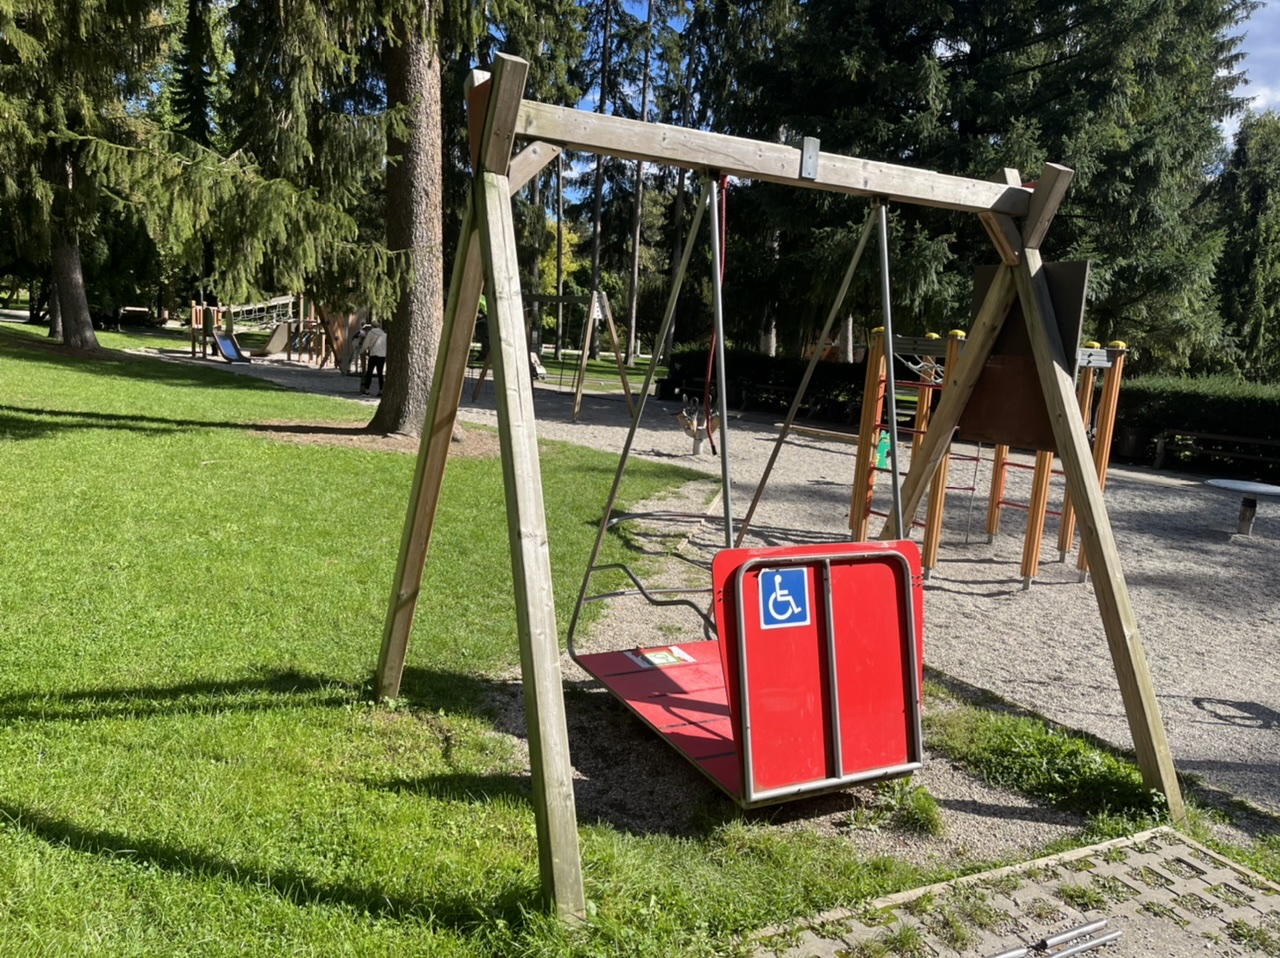 DNEVNA: Gugalnico za gibalno ovirane otroke v parku bodo nadomestili z novo